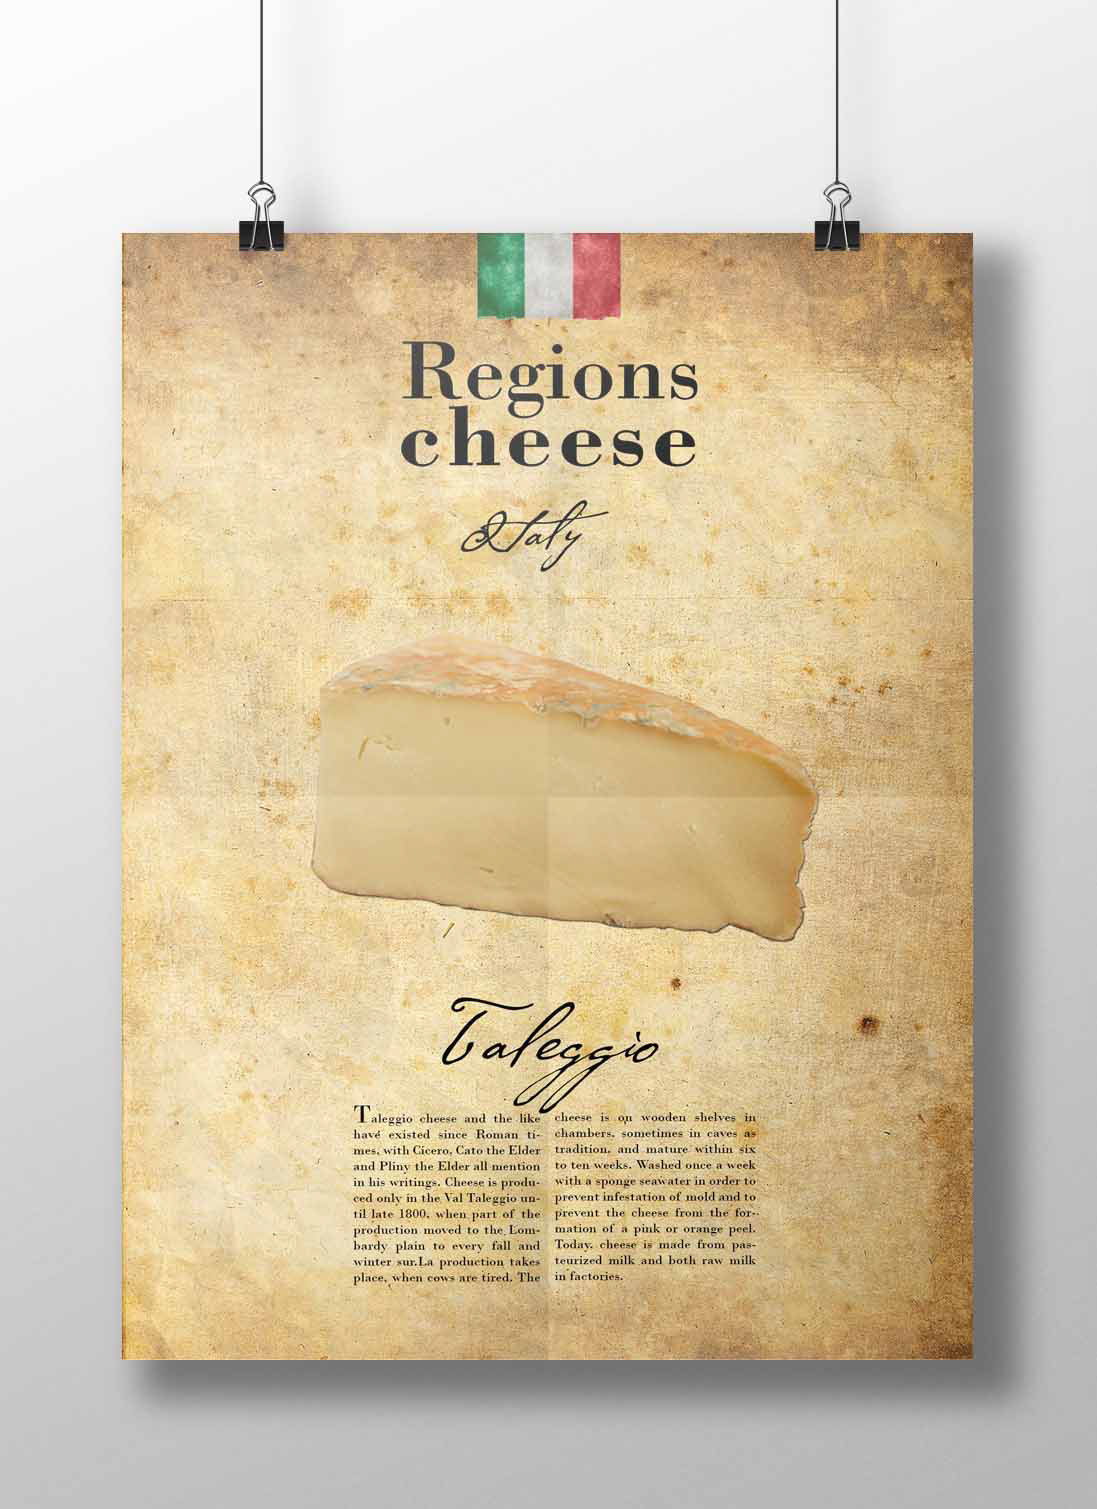 Reino Unido italia francia suiza cheddar roquefort chesse queso vendimia Regions